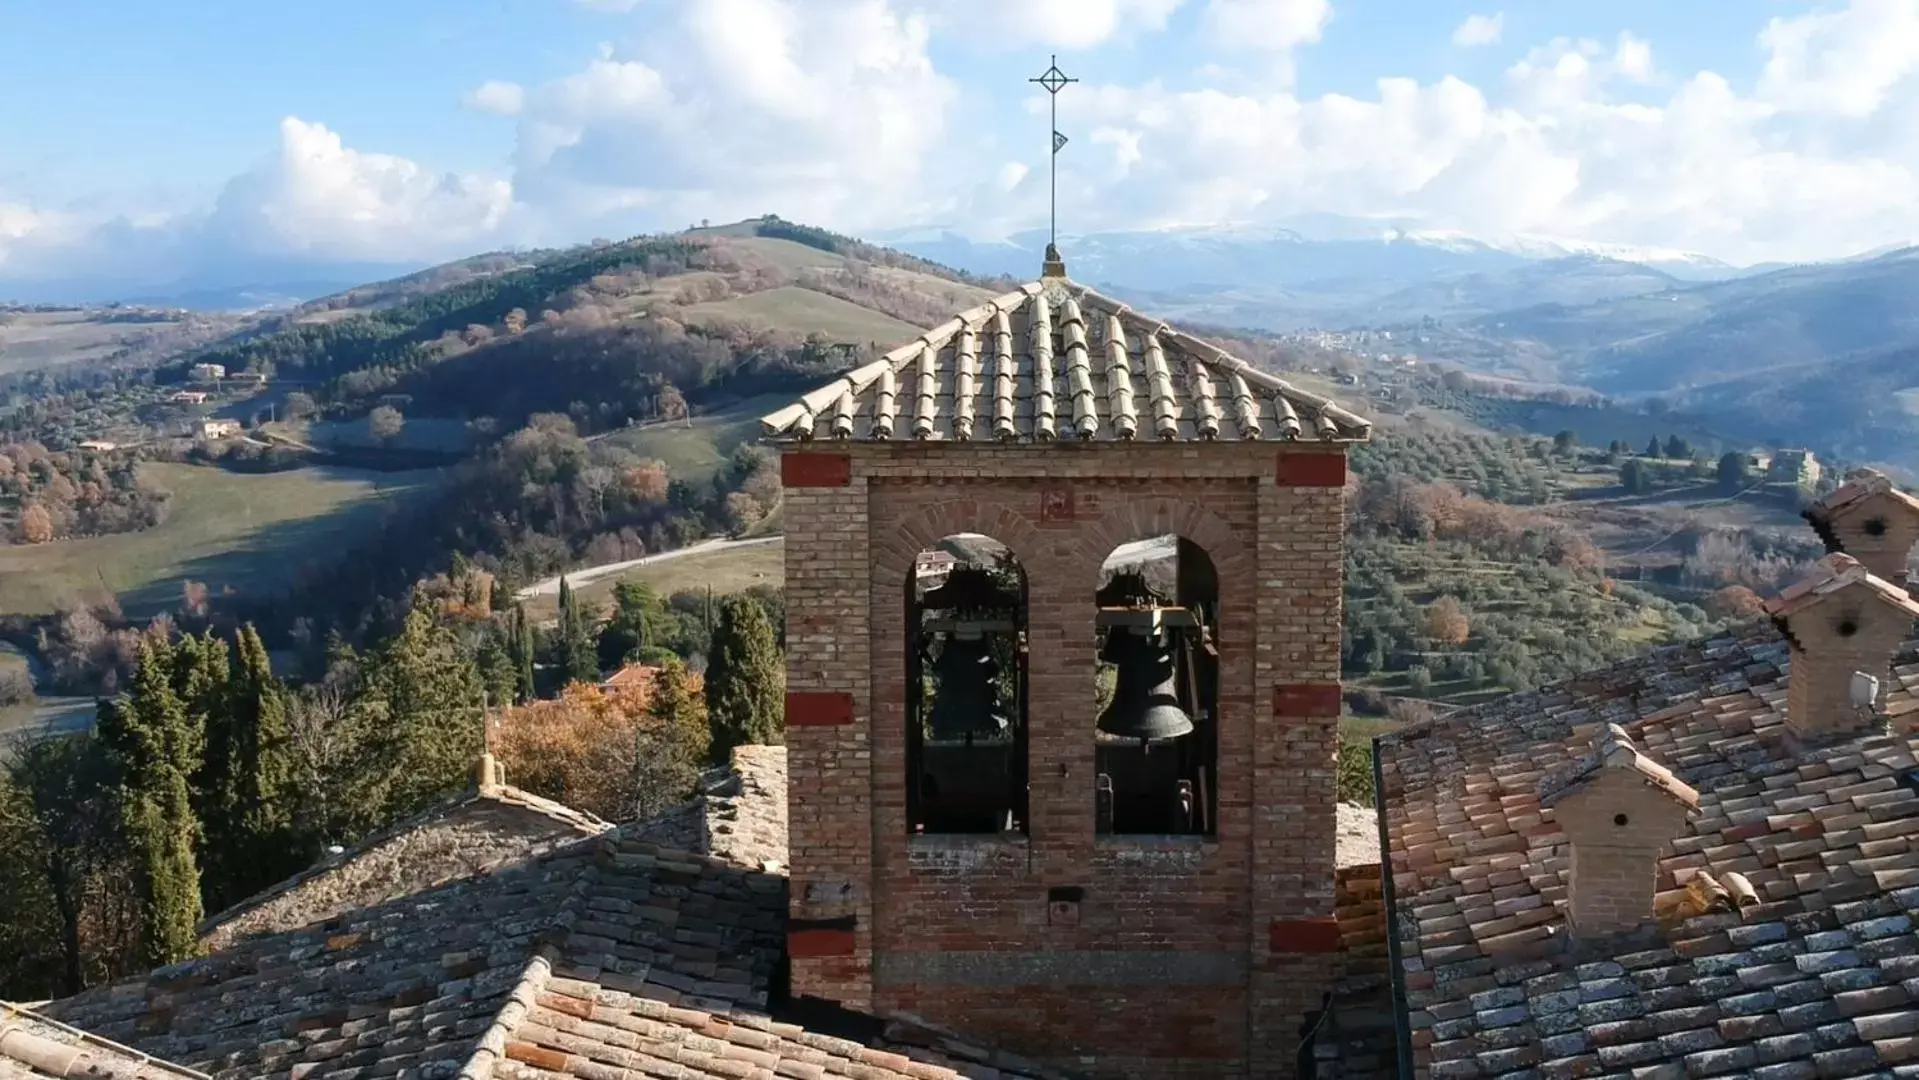 Area and facilities in Castello Di Giomici